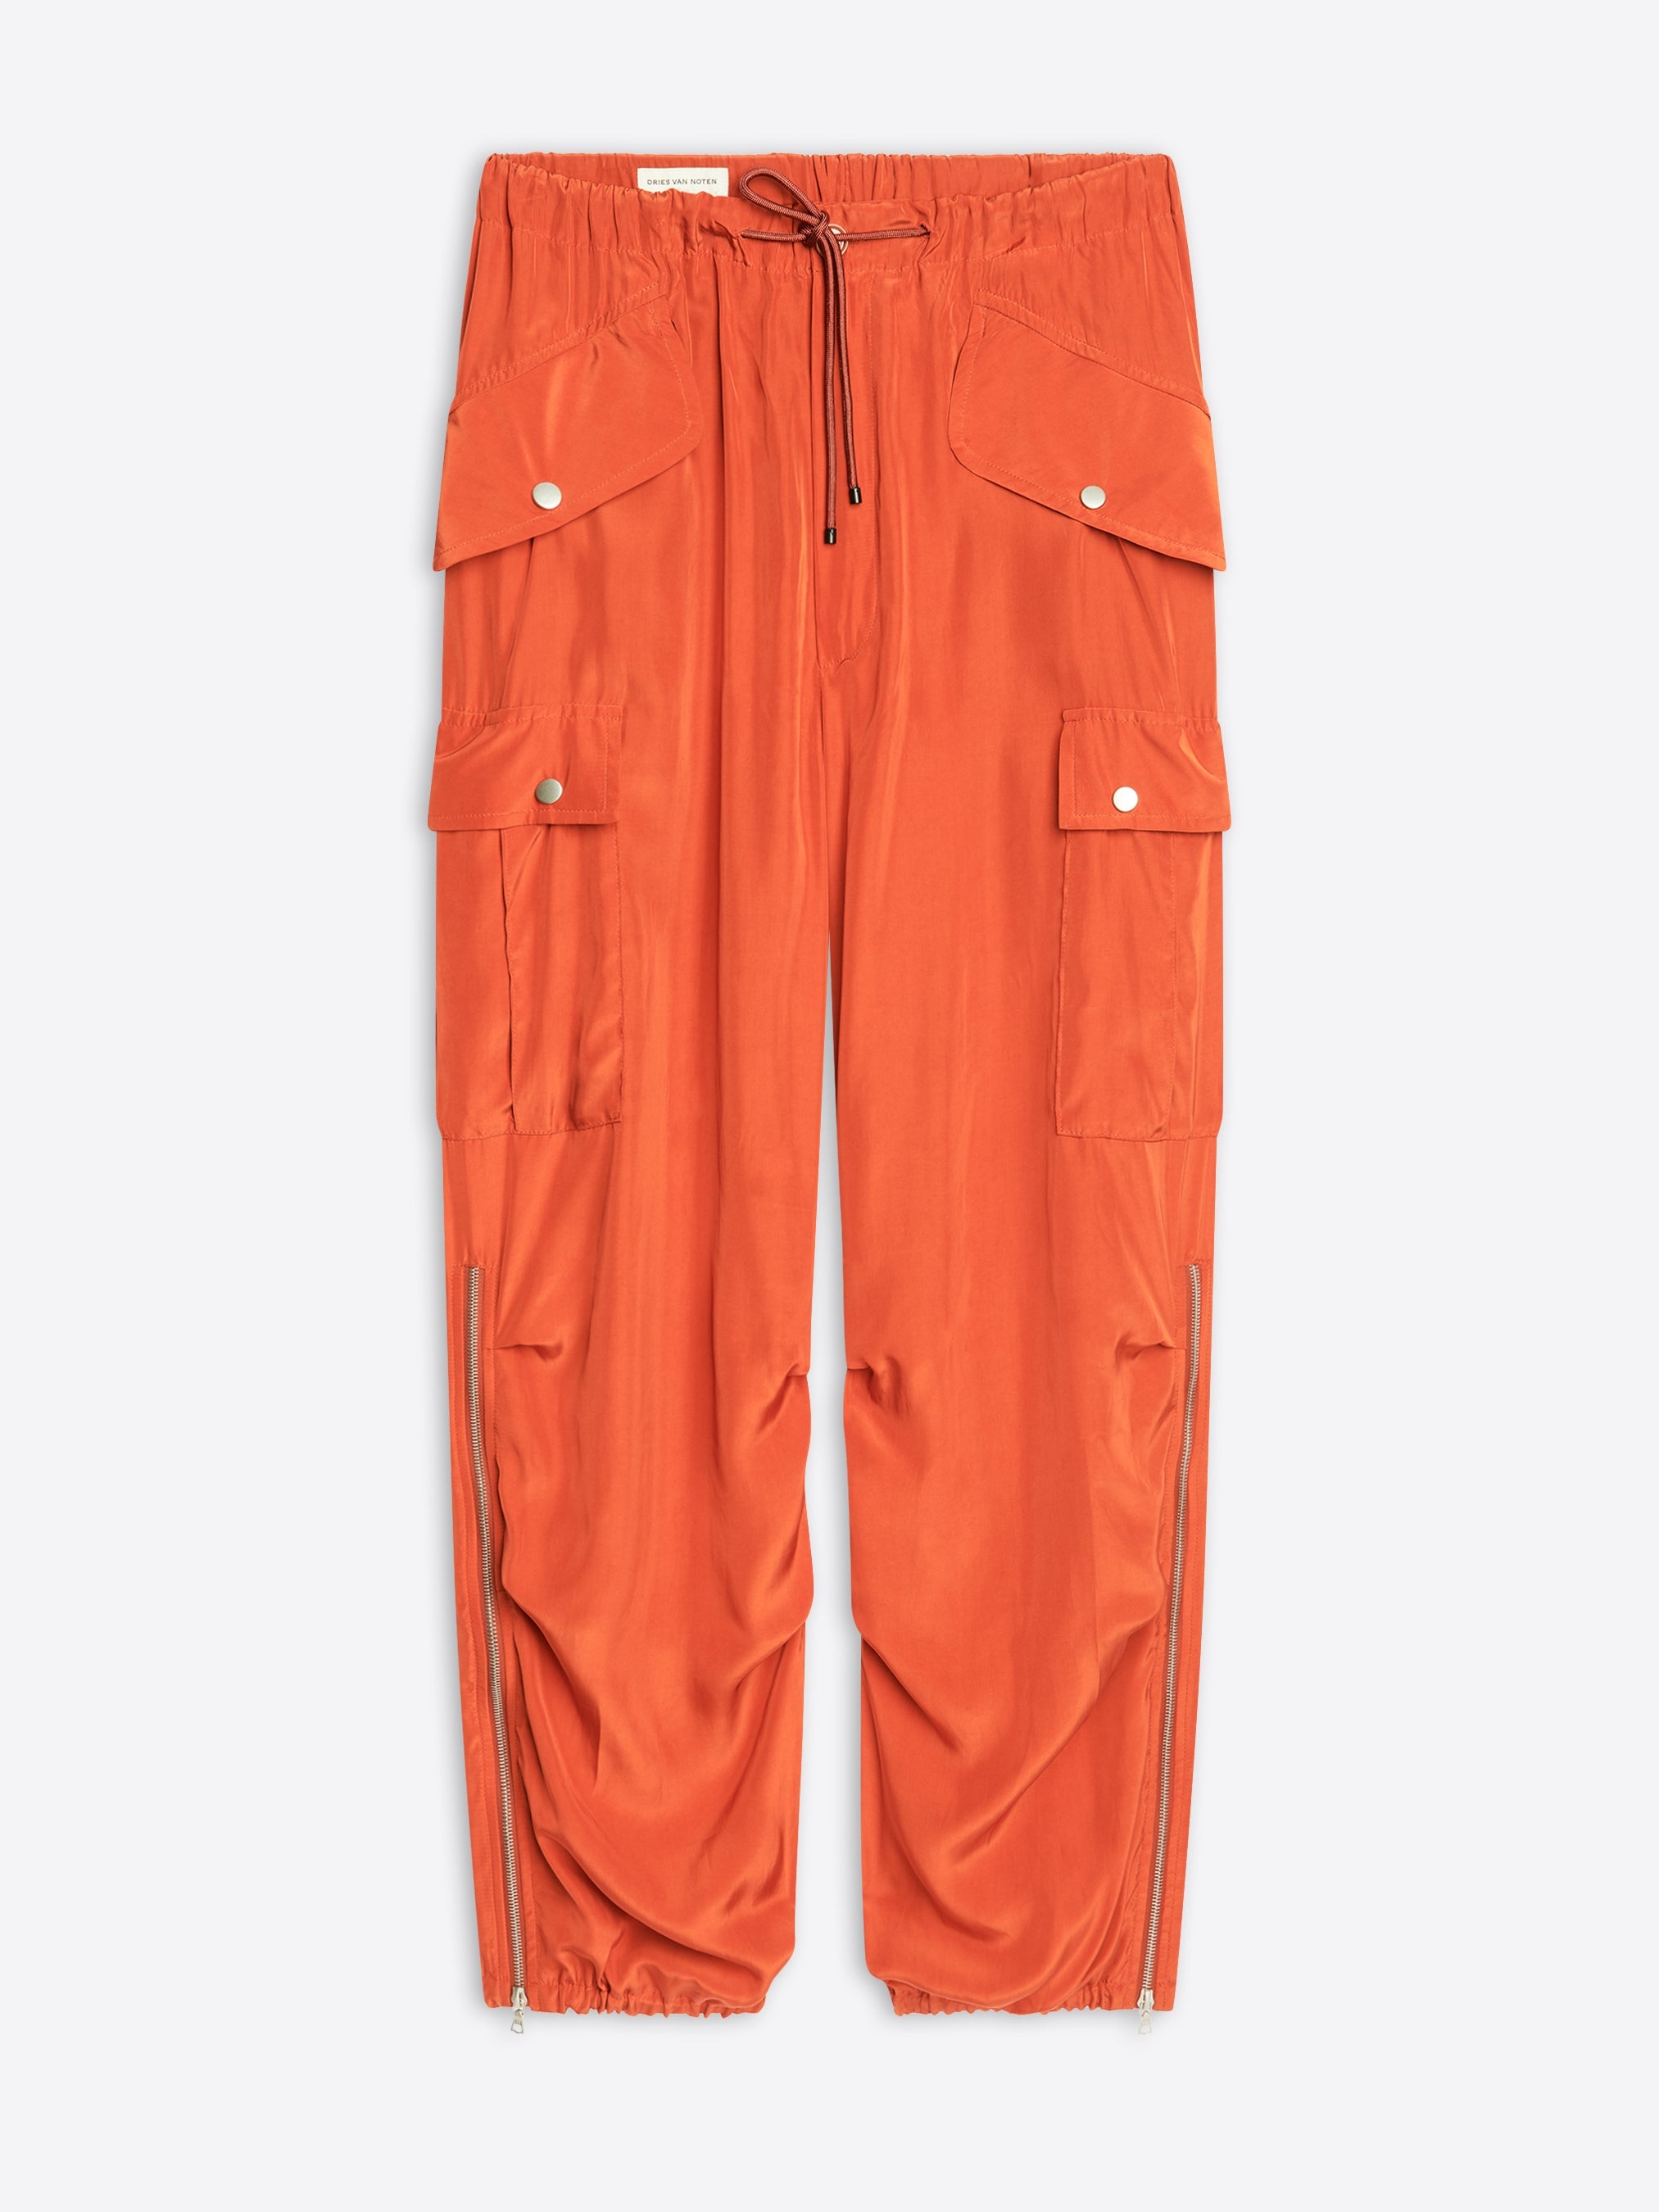 Dries Van Noten Orange Graphic Cargo Pants